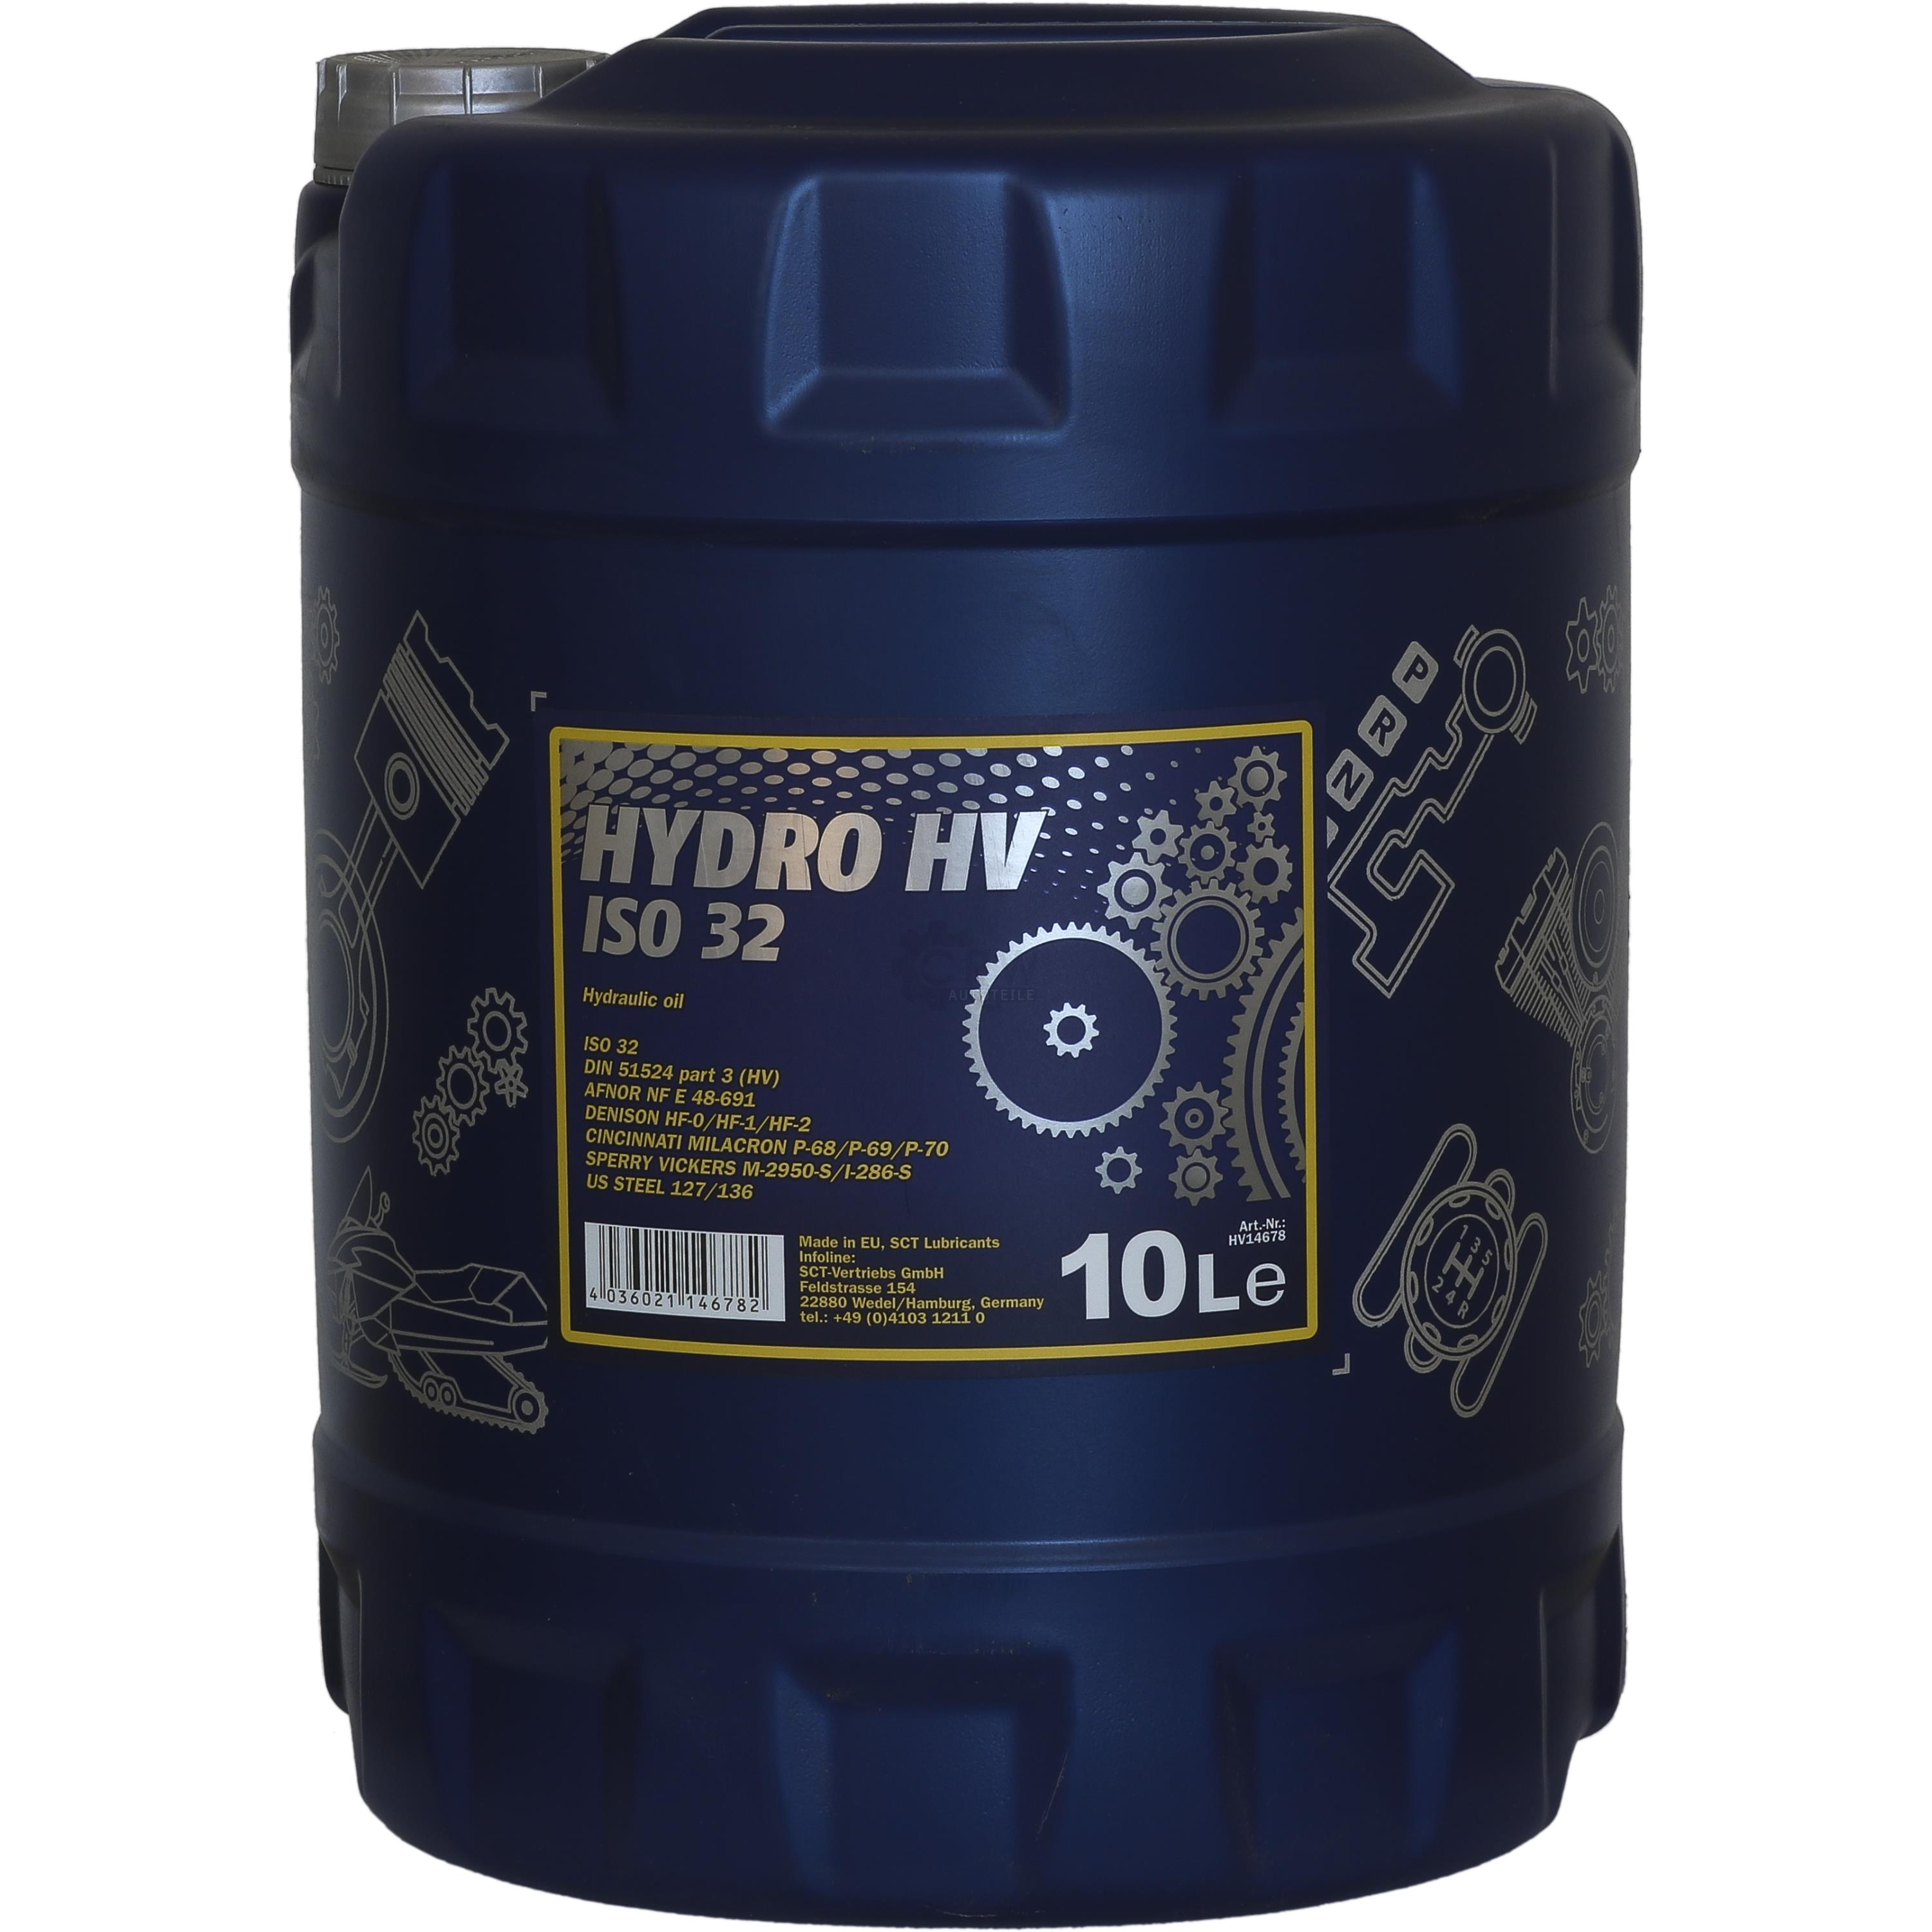 10 Liter Mannol Hydro HV ISO 32 Hydrauliköl HVLP Öl Oil DIN 51524/3